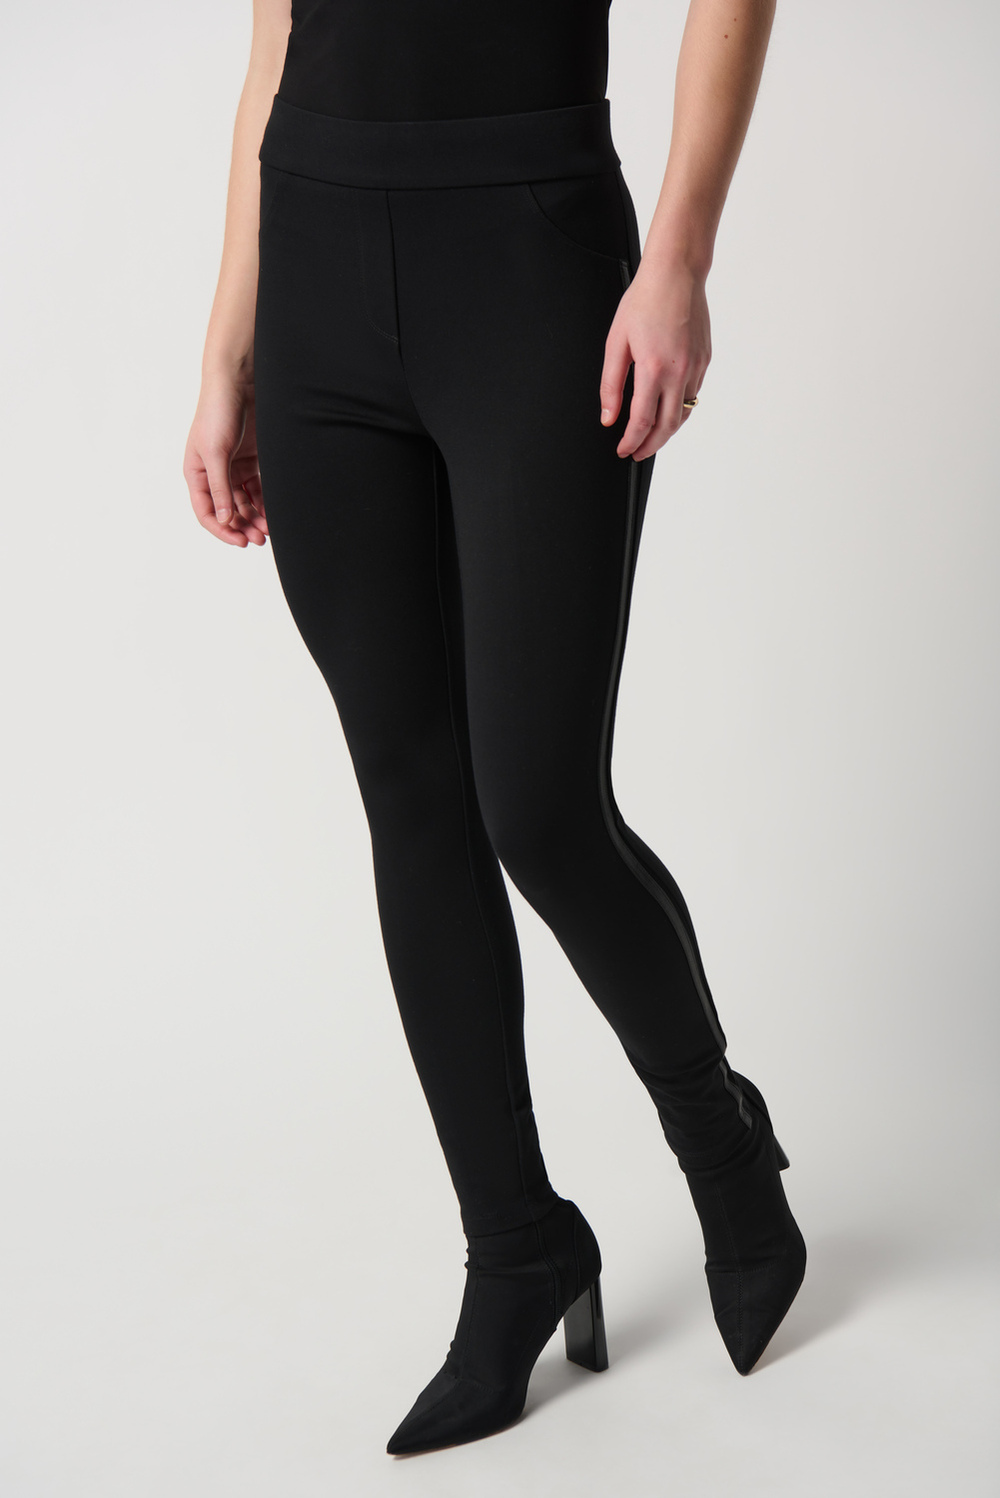 Pantalon style legging modèle 234236. Noir